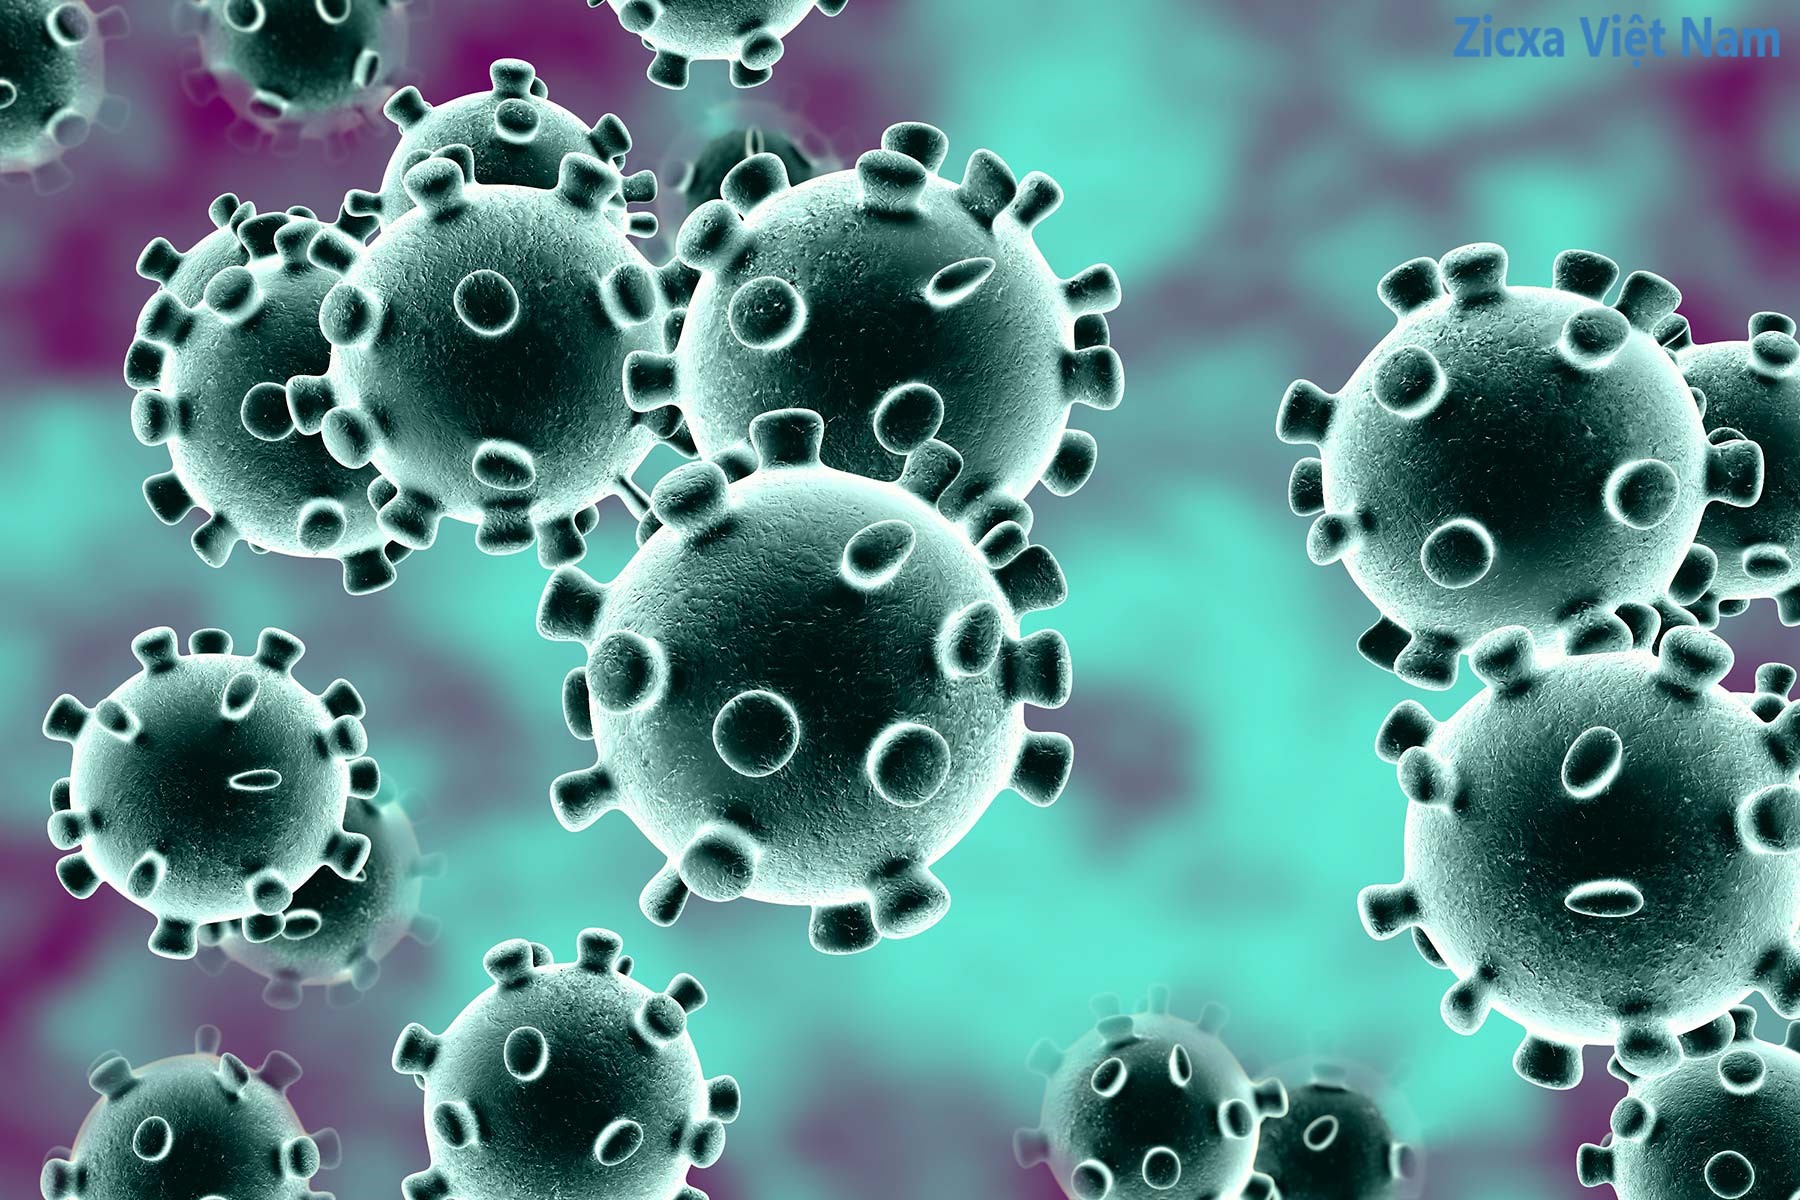 Cách phòng ngừa virus Corona theo Khuyến cáo của Bộ Y tế và WHO